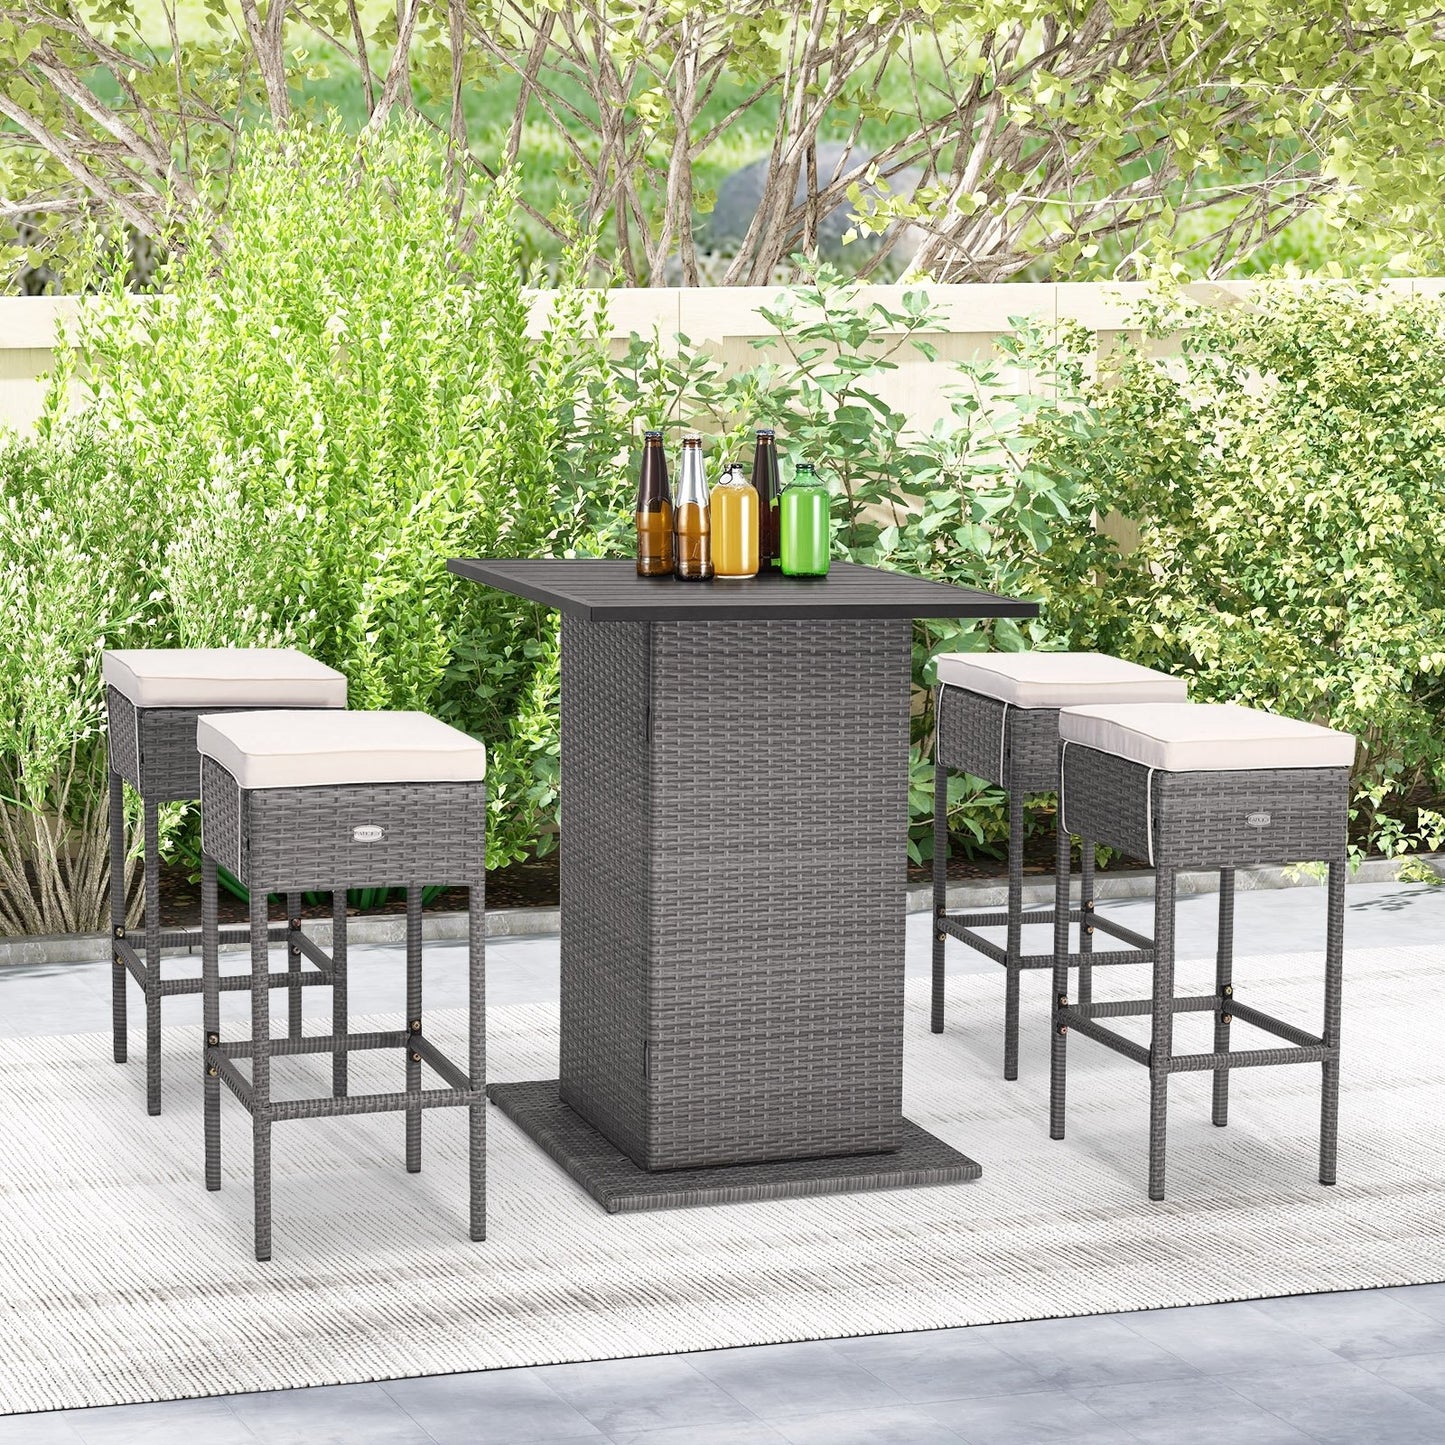 5 Pieces Outdoor Wicker Bar Table Set with Hidden Storage Shelves, Beige